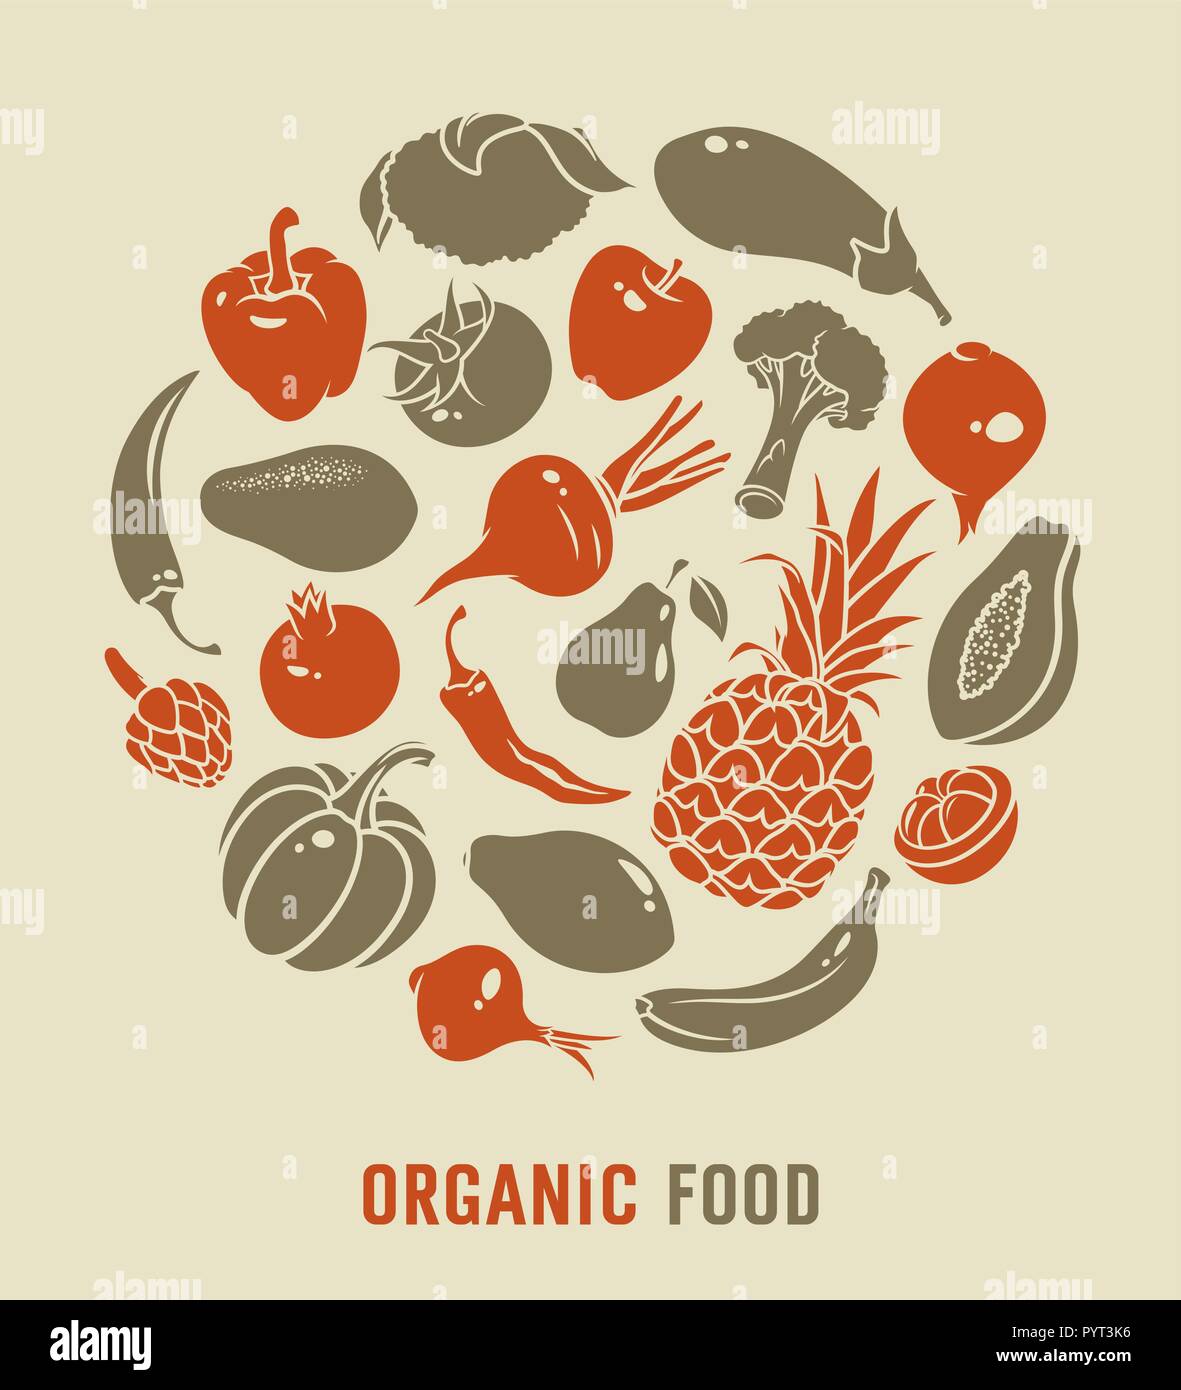 Les aliments biologiques vector illustration avec silhouettes de légumes et fruits Illustration de Vecteur